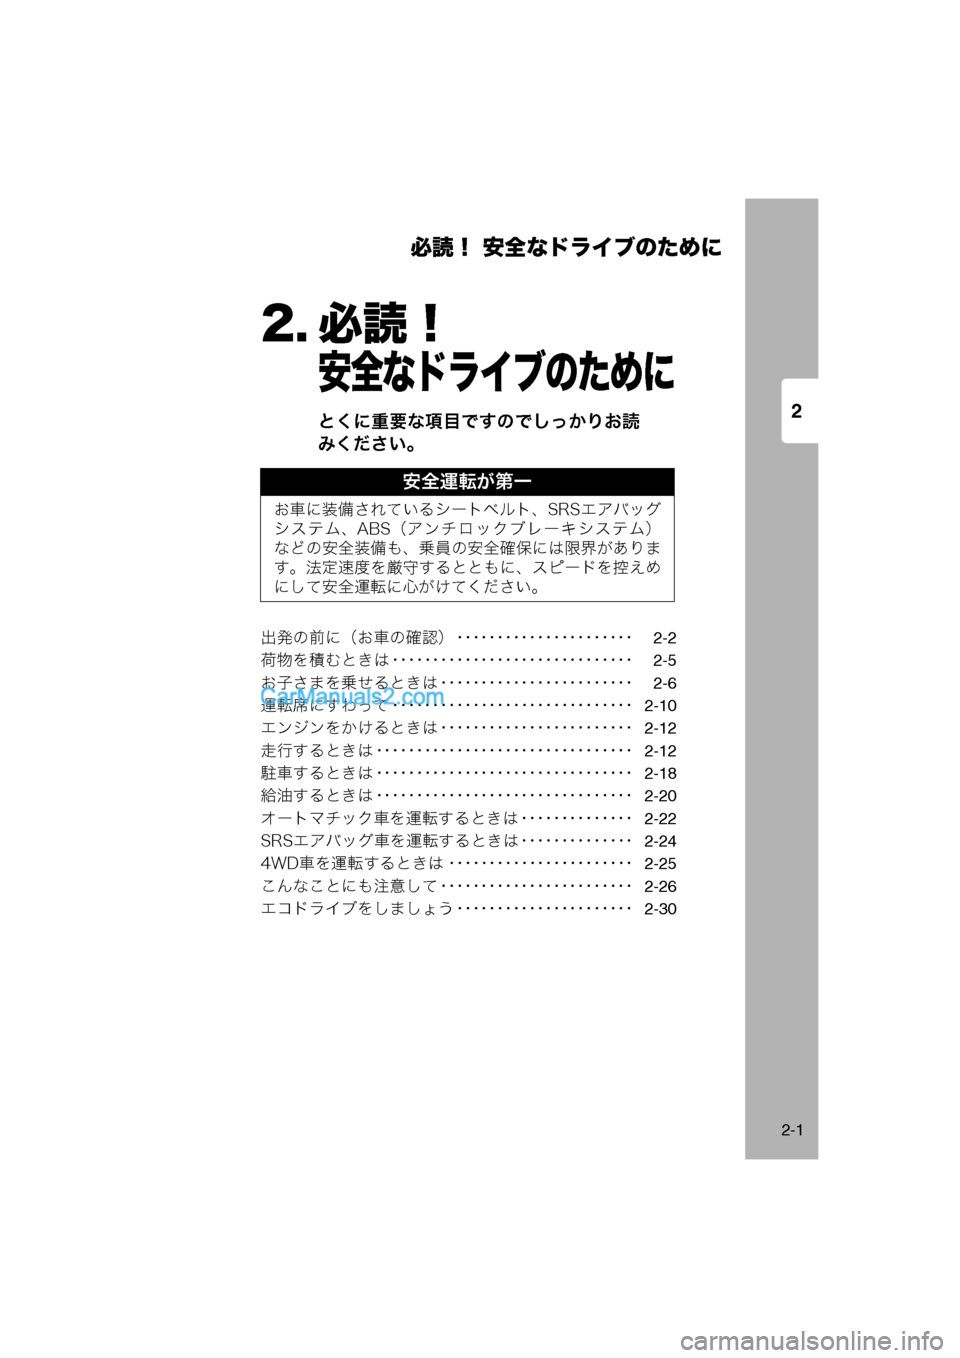 MAZDA MODEL CARROL 2013  取扱説明書 (キャロル) (in Japanese) 2
必読！ 安全なドライブのために
2-1
2. 必読！
安全なドライブのために
とくに重要な項目ですのでしっかりお読
みください。
出発の前に（お車の�